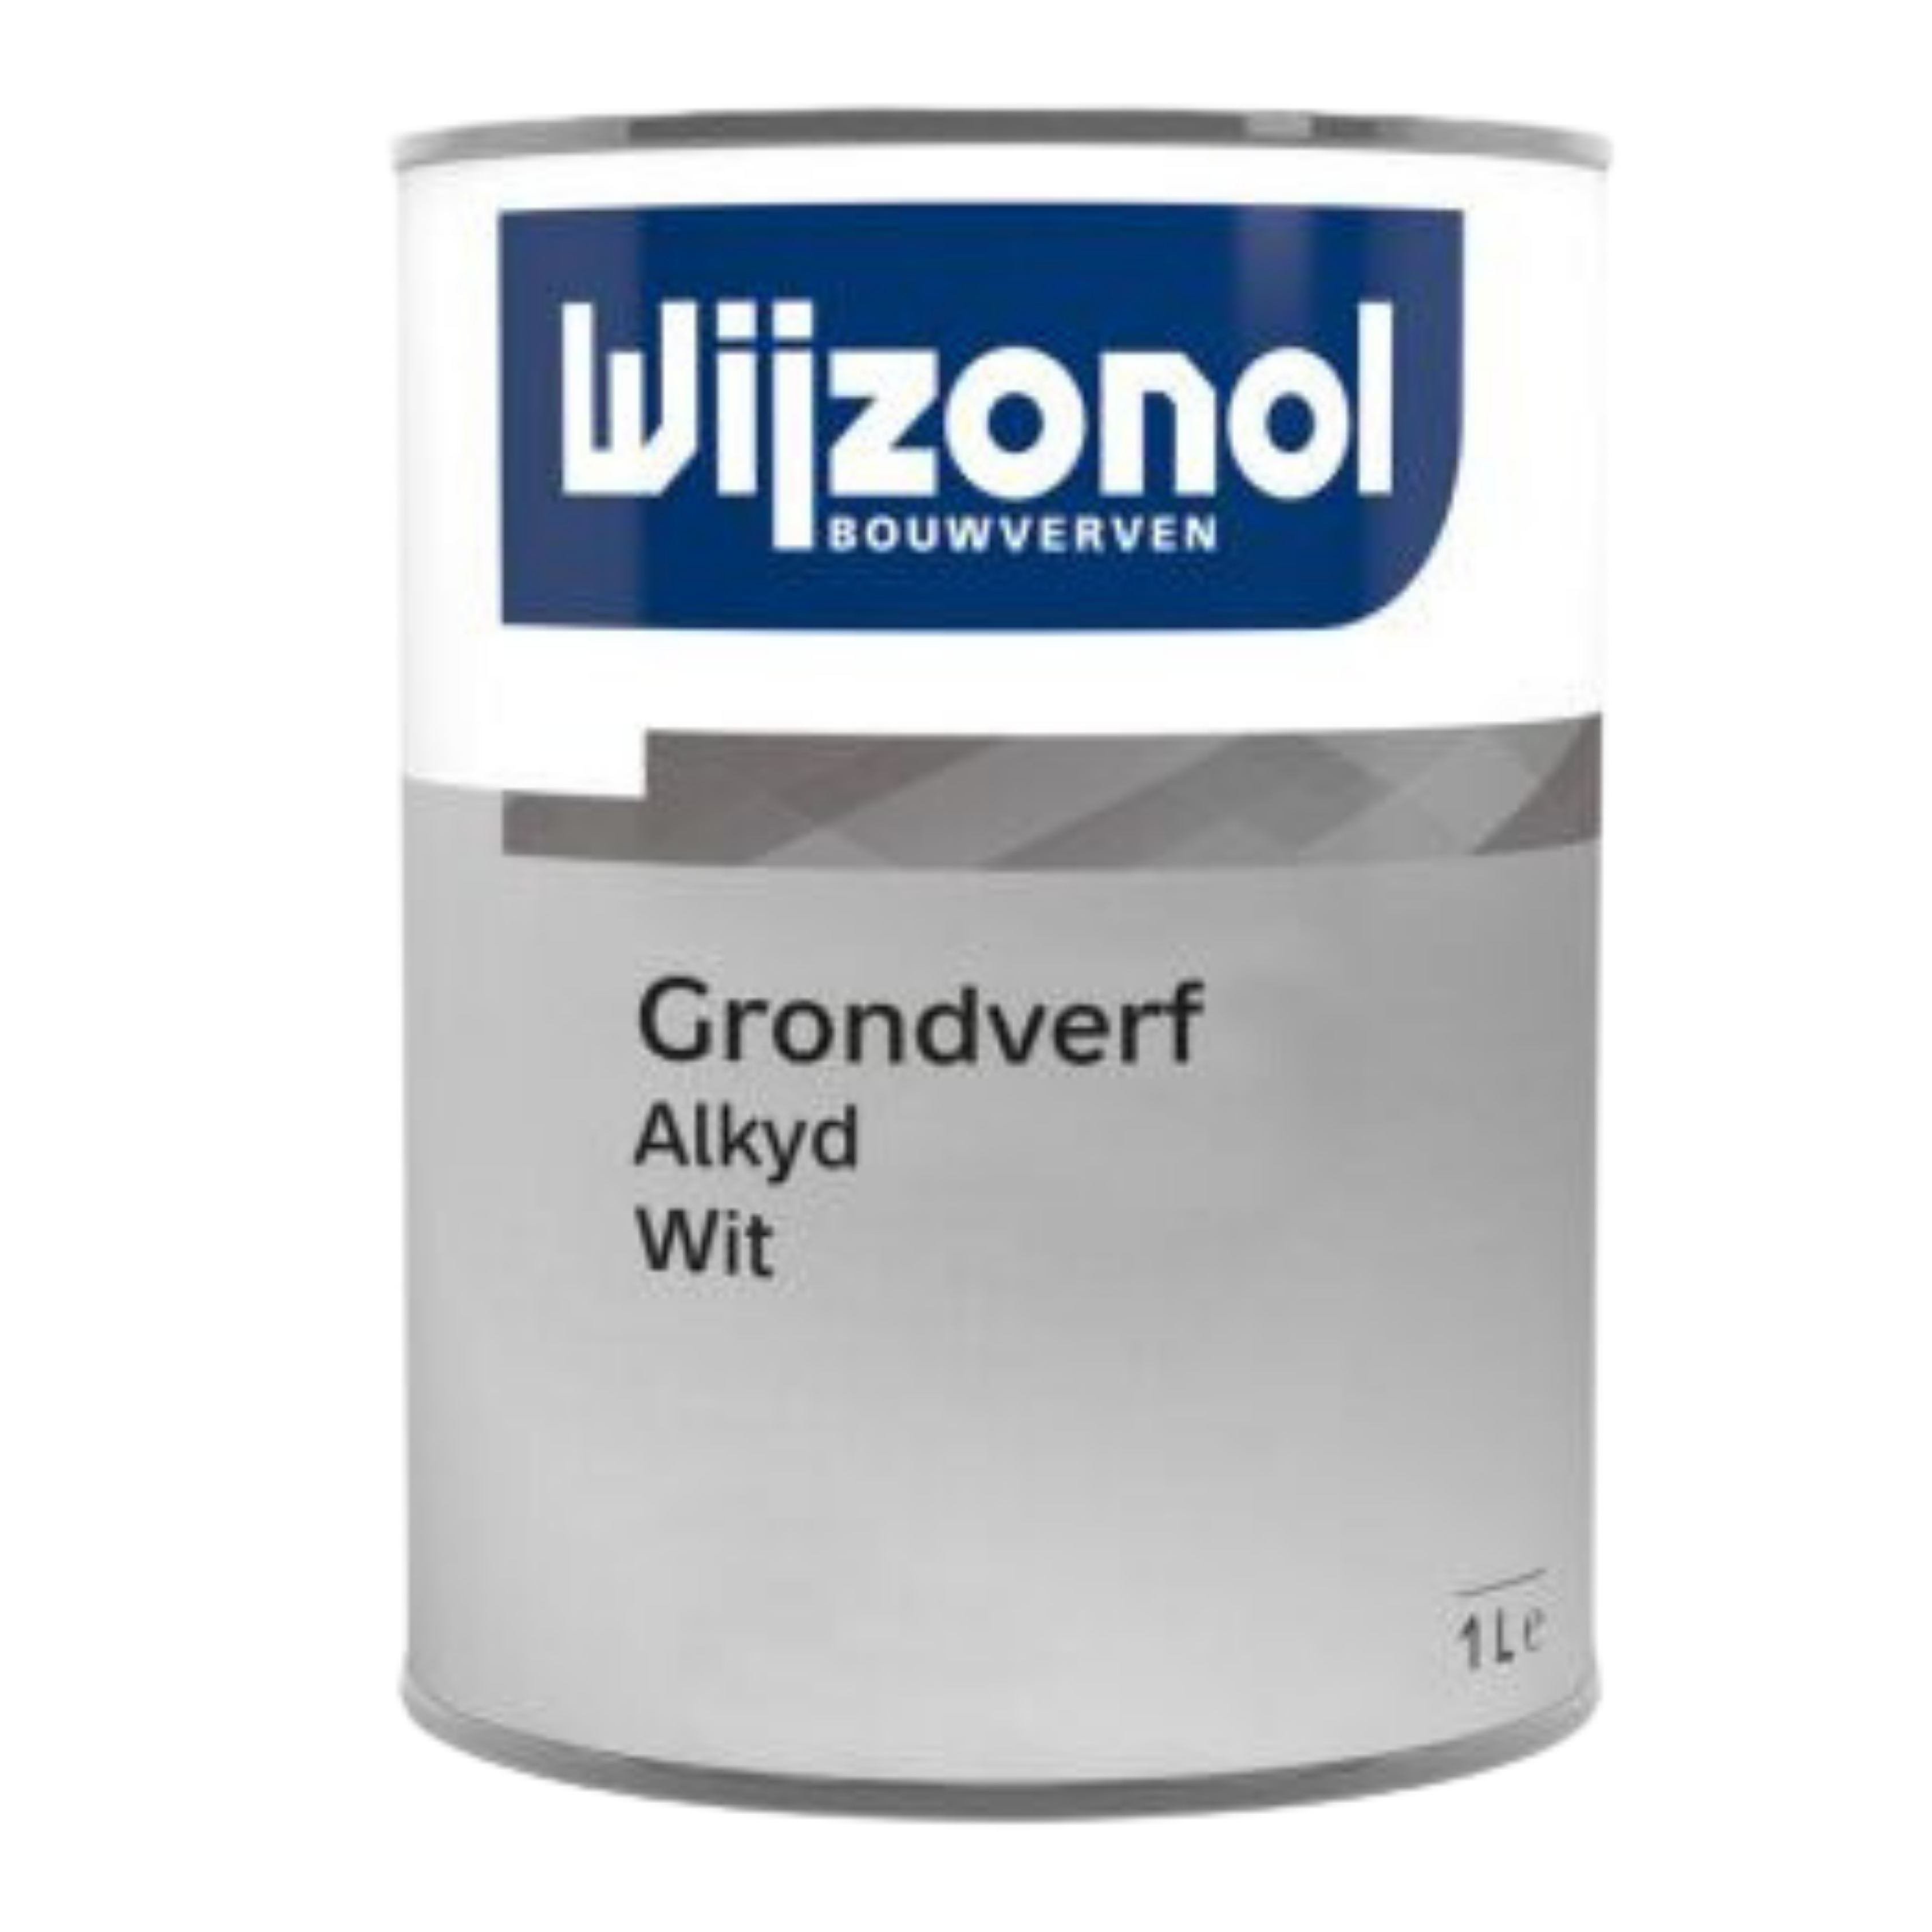 Wijzonol Grondverf Alkyd 2.5 RAL 9010